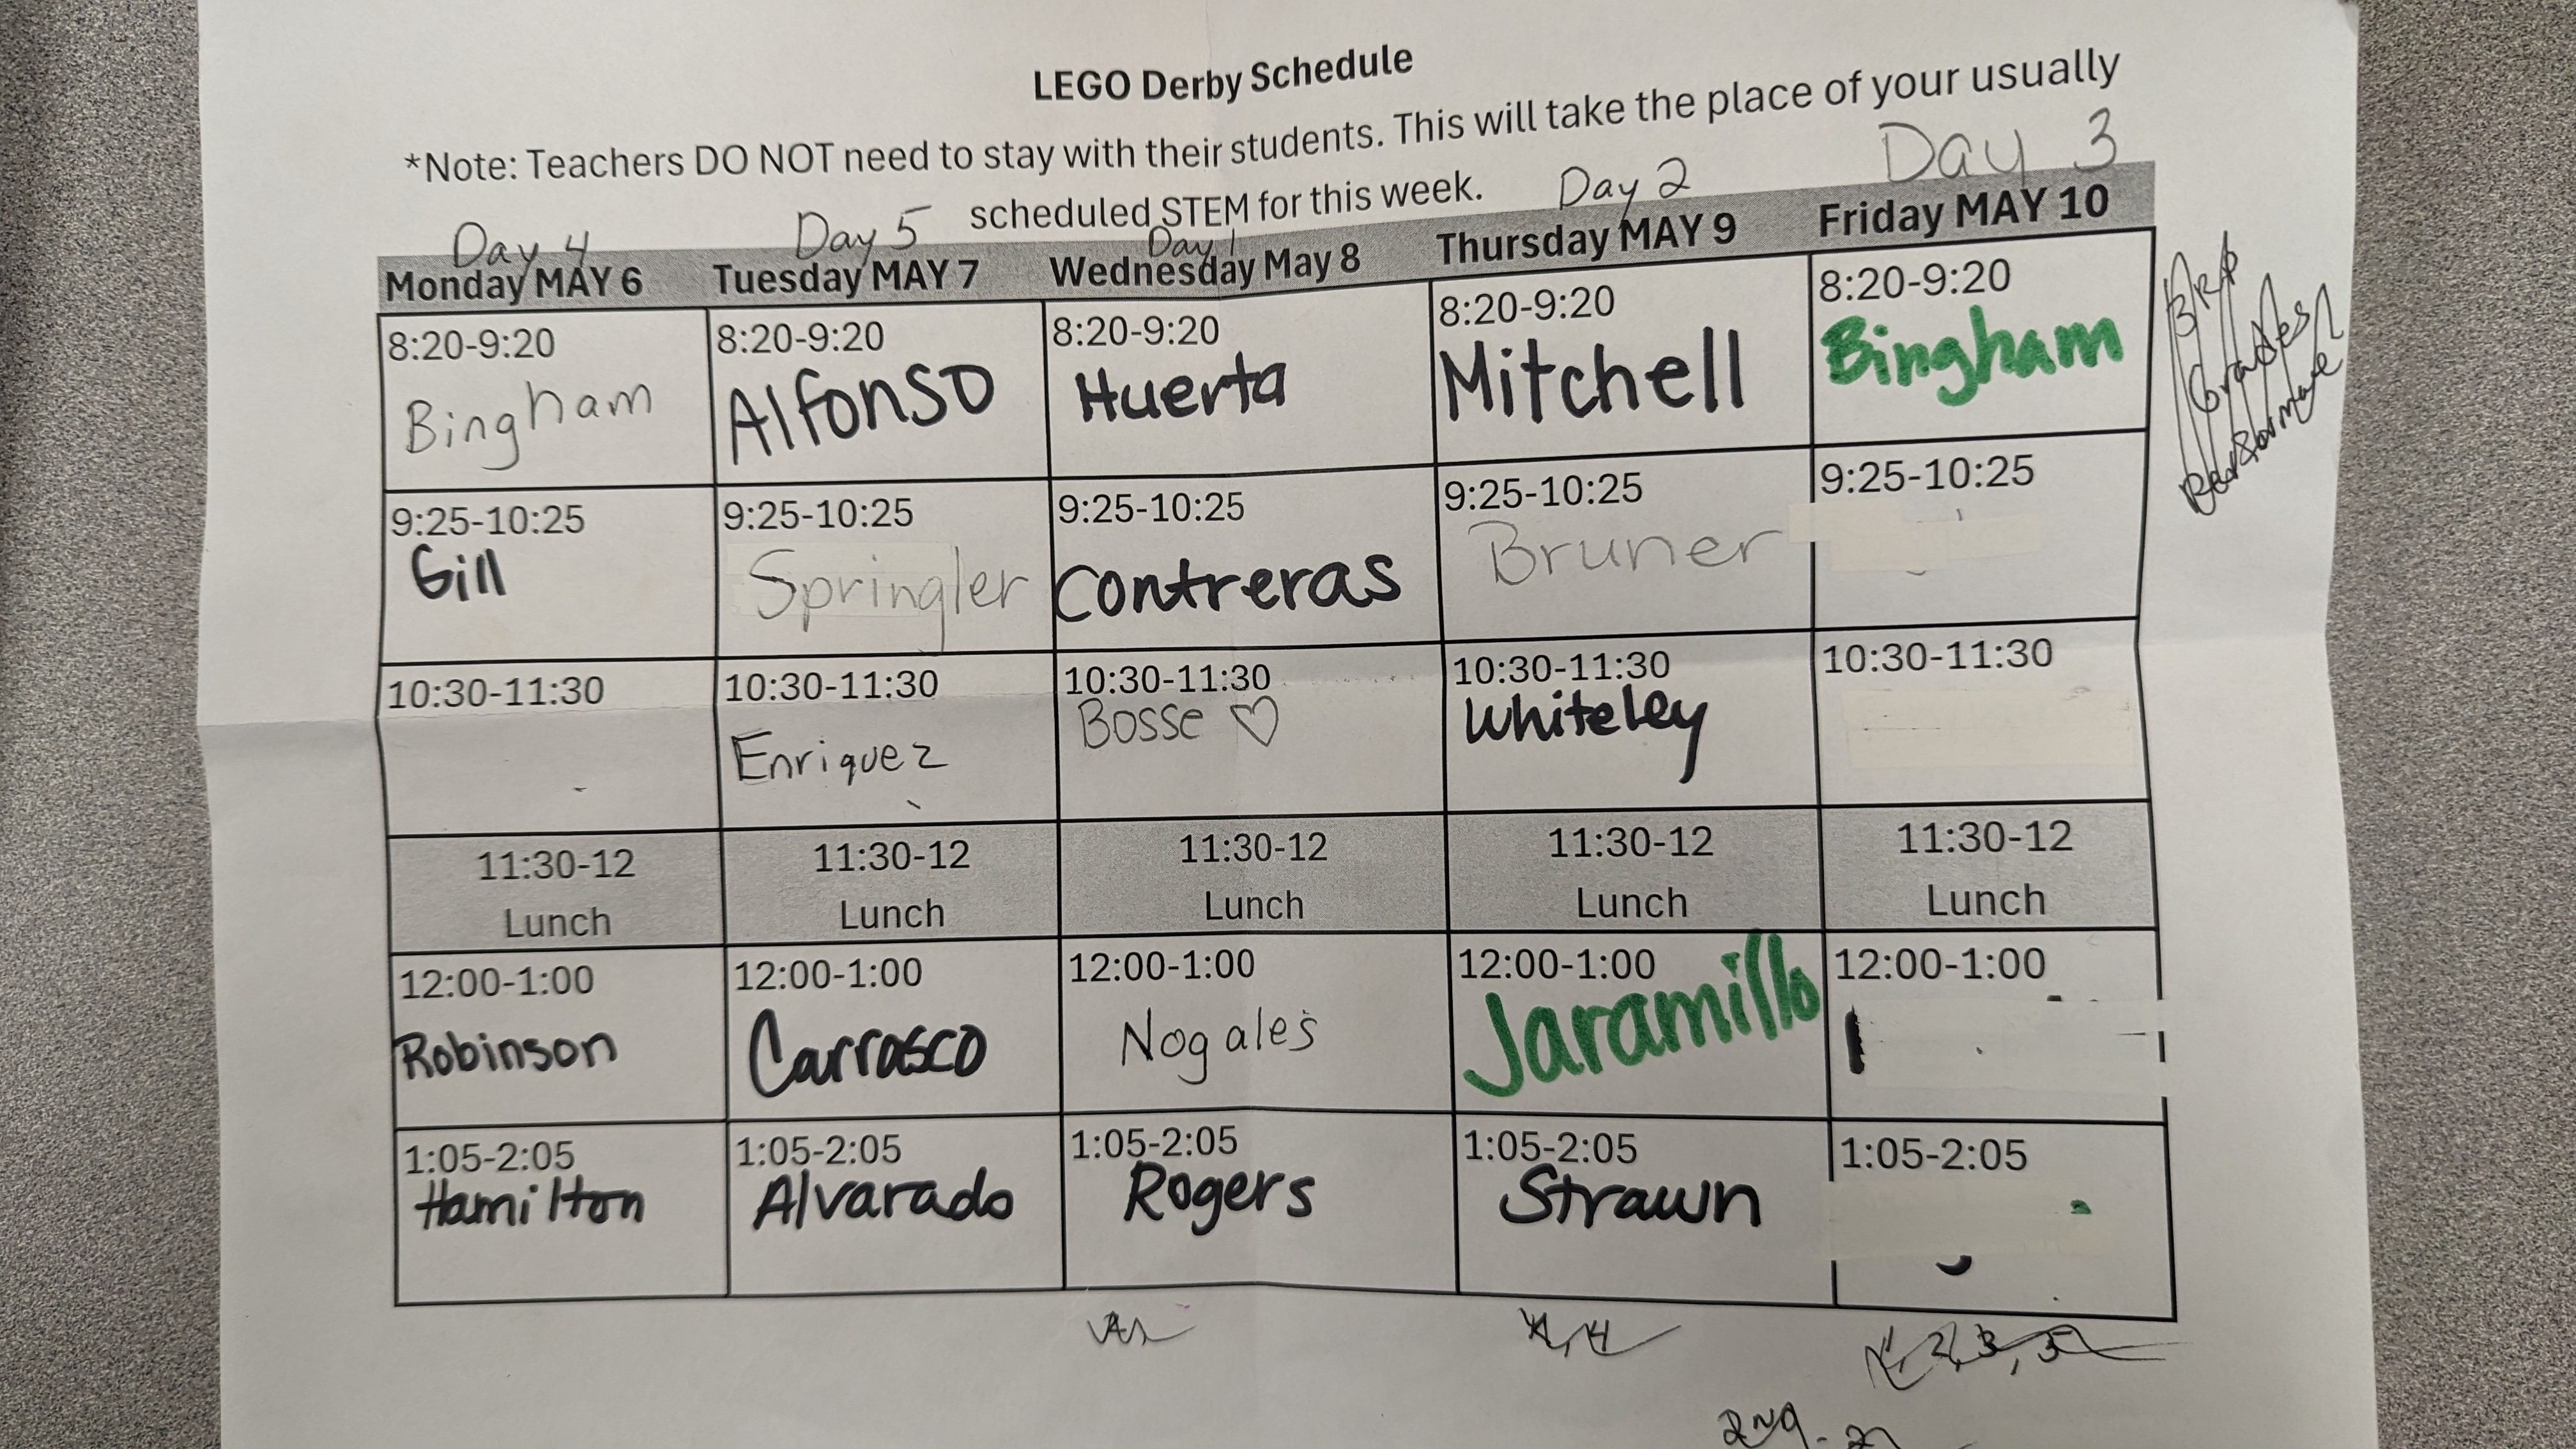 Lego Derby Schedule 